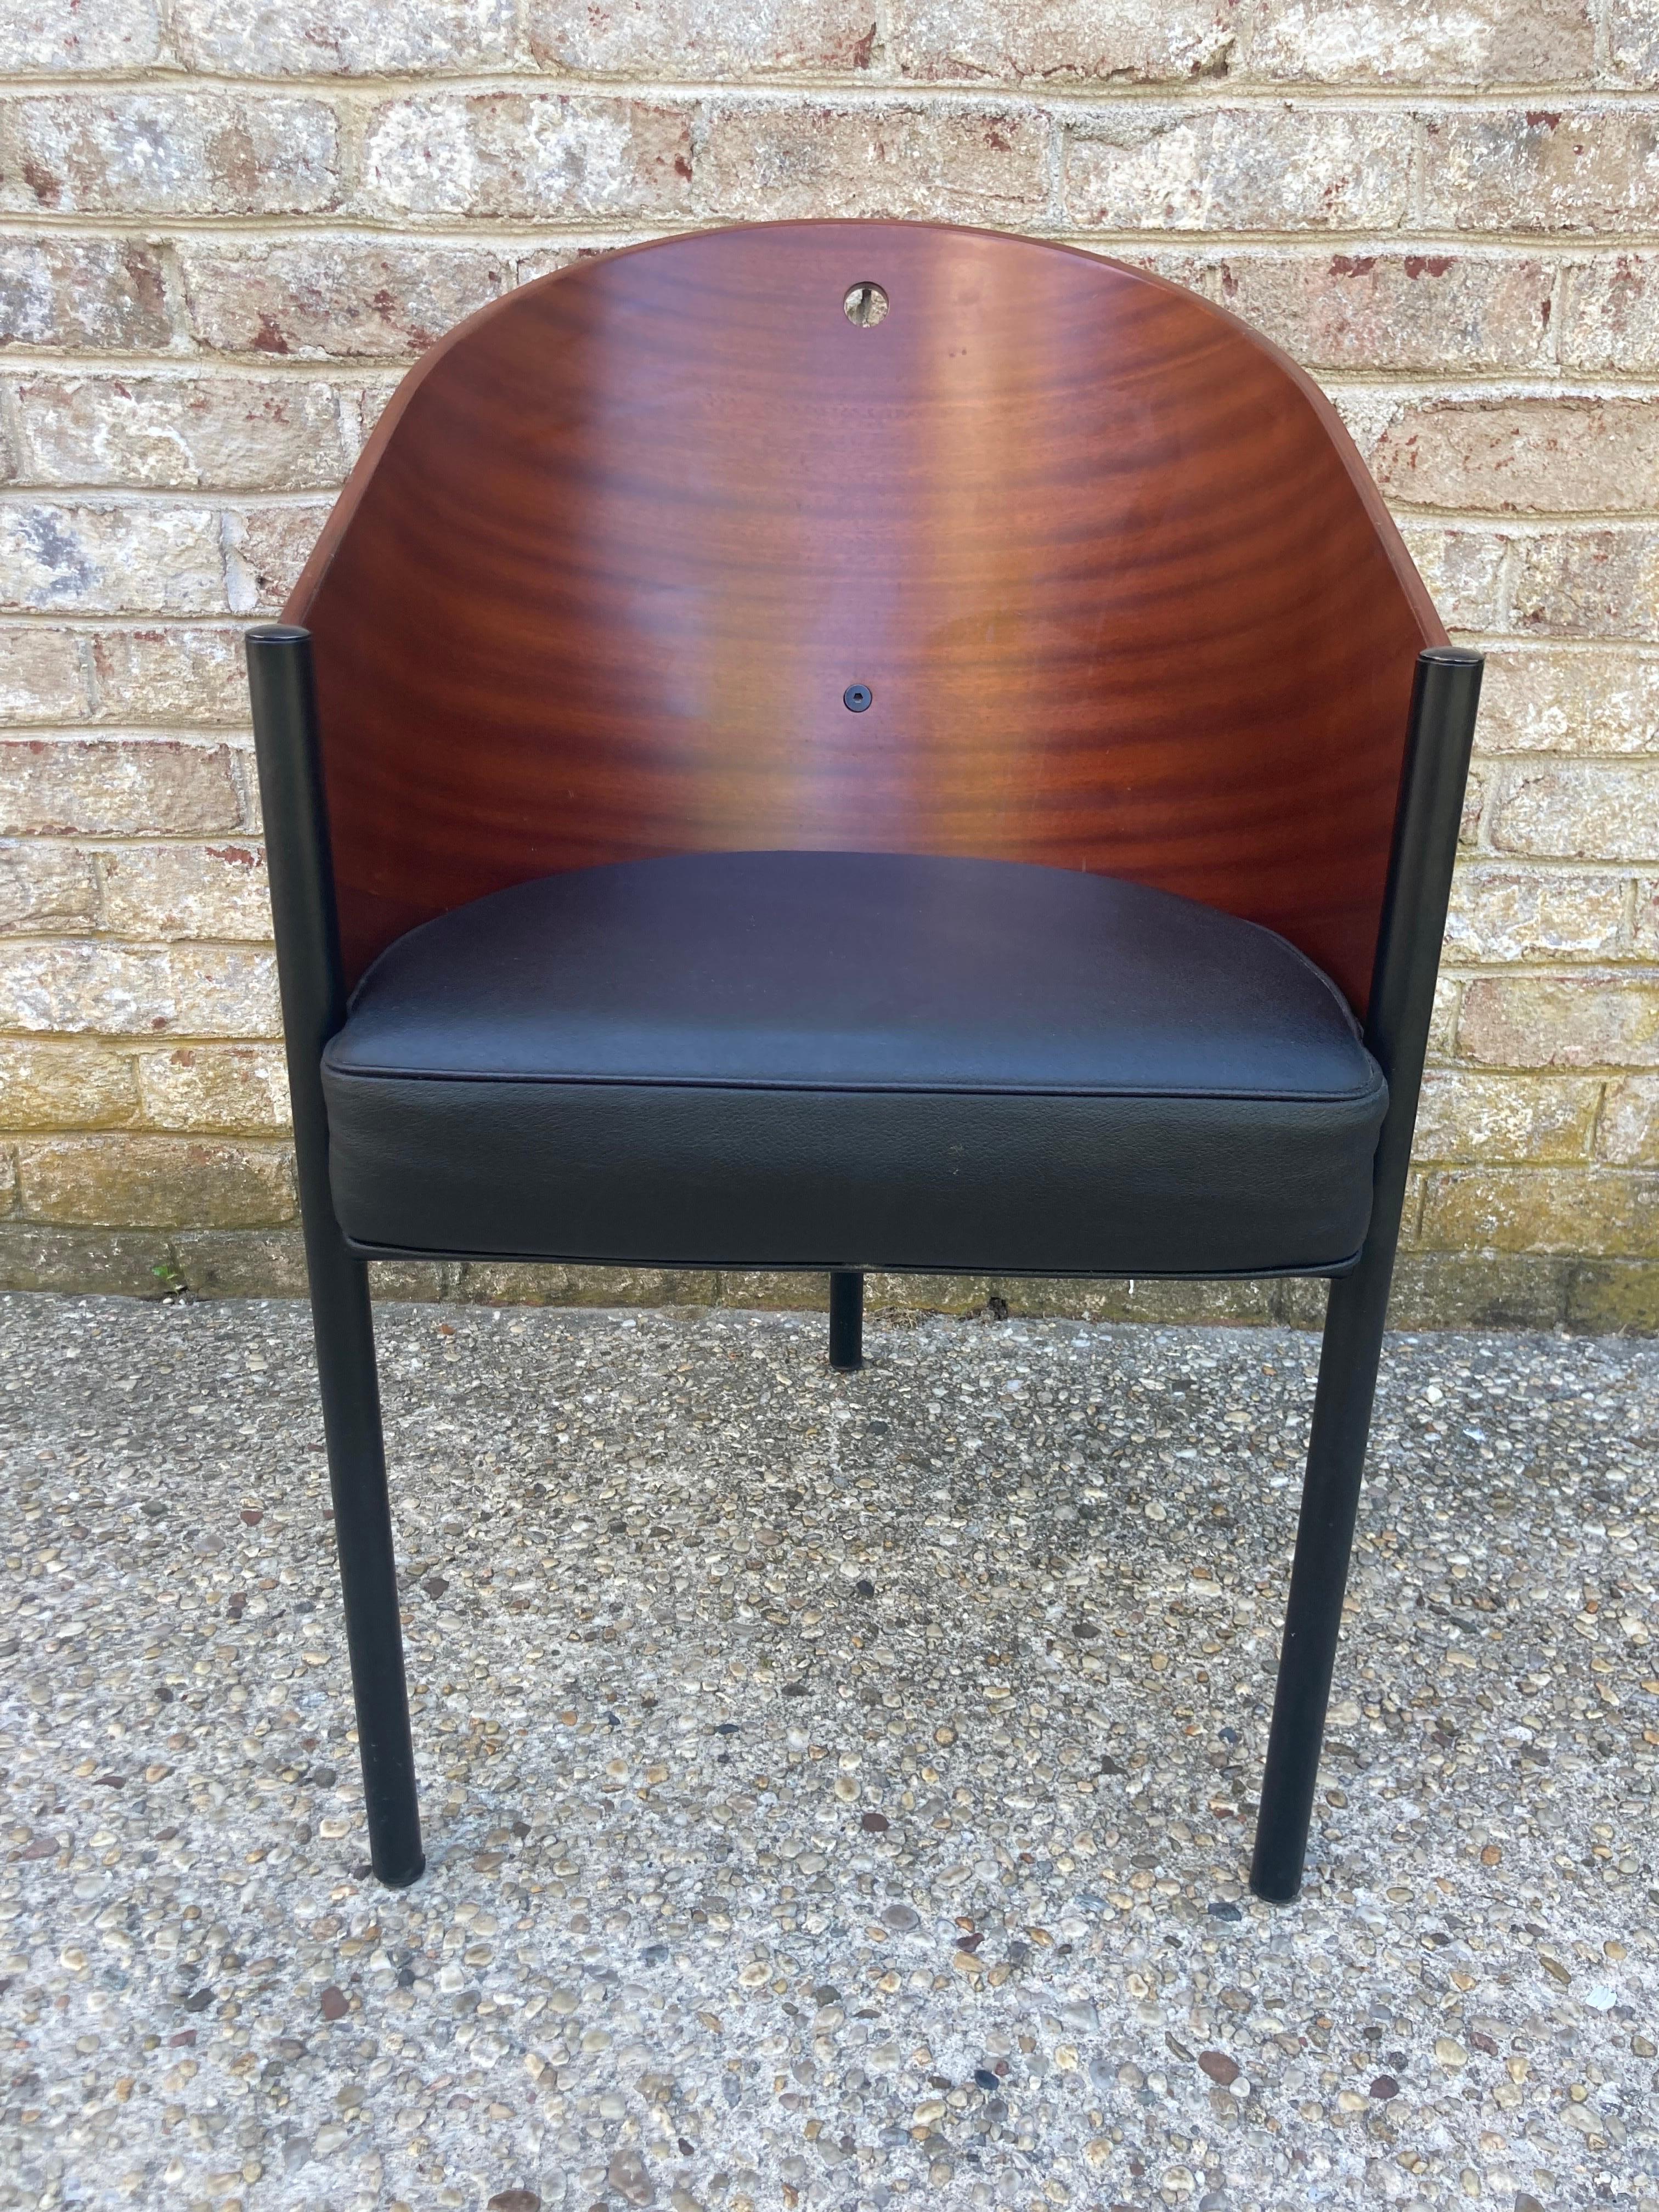 Der ikonische dreibeinige Costes-Stuhl für Driade von Philippe Starck.